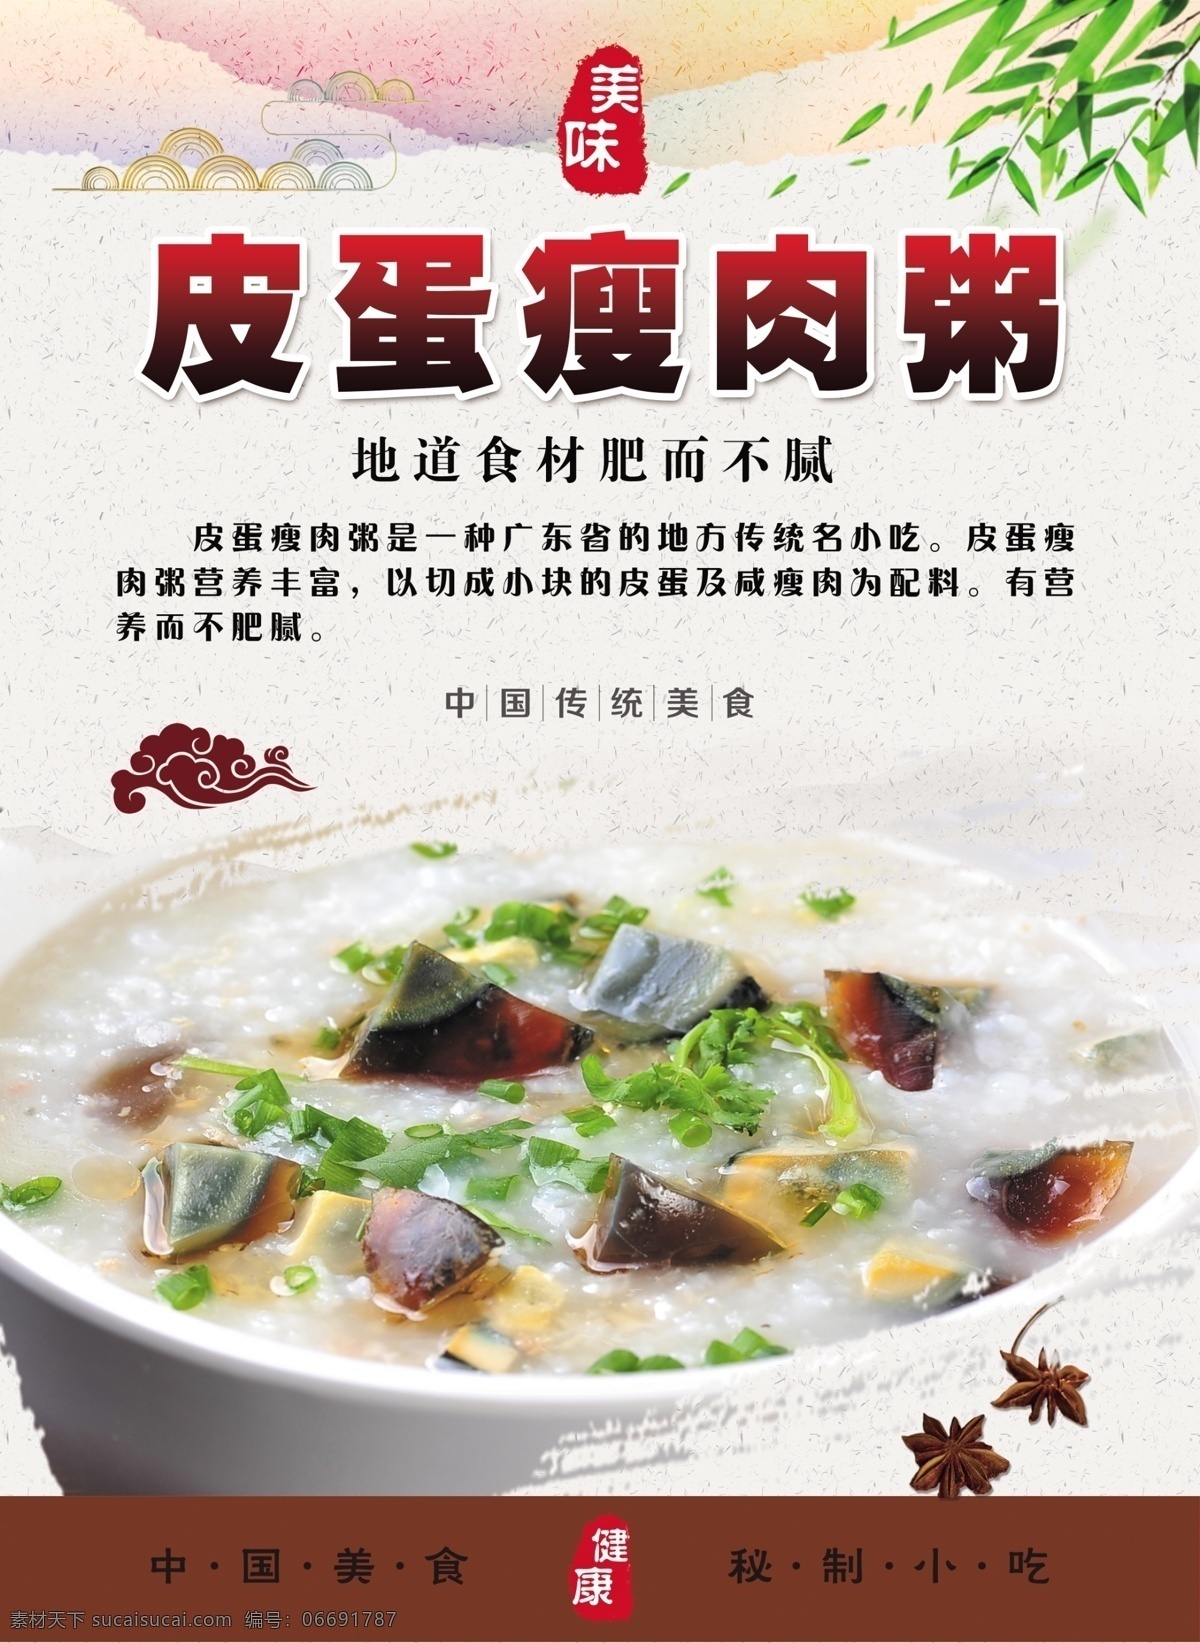 皮蛋瘦肉粥 玉米排骨粥 简介 中国传统美食 美味 健康 免扣图 美食